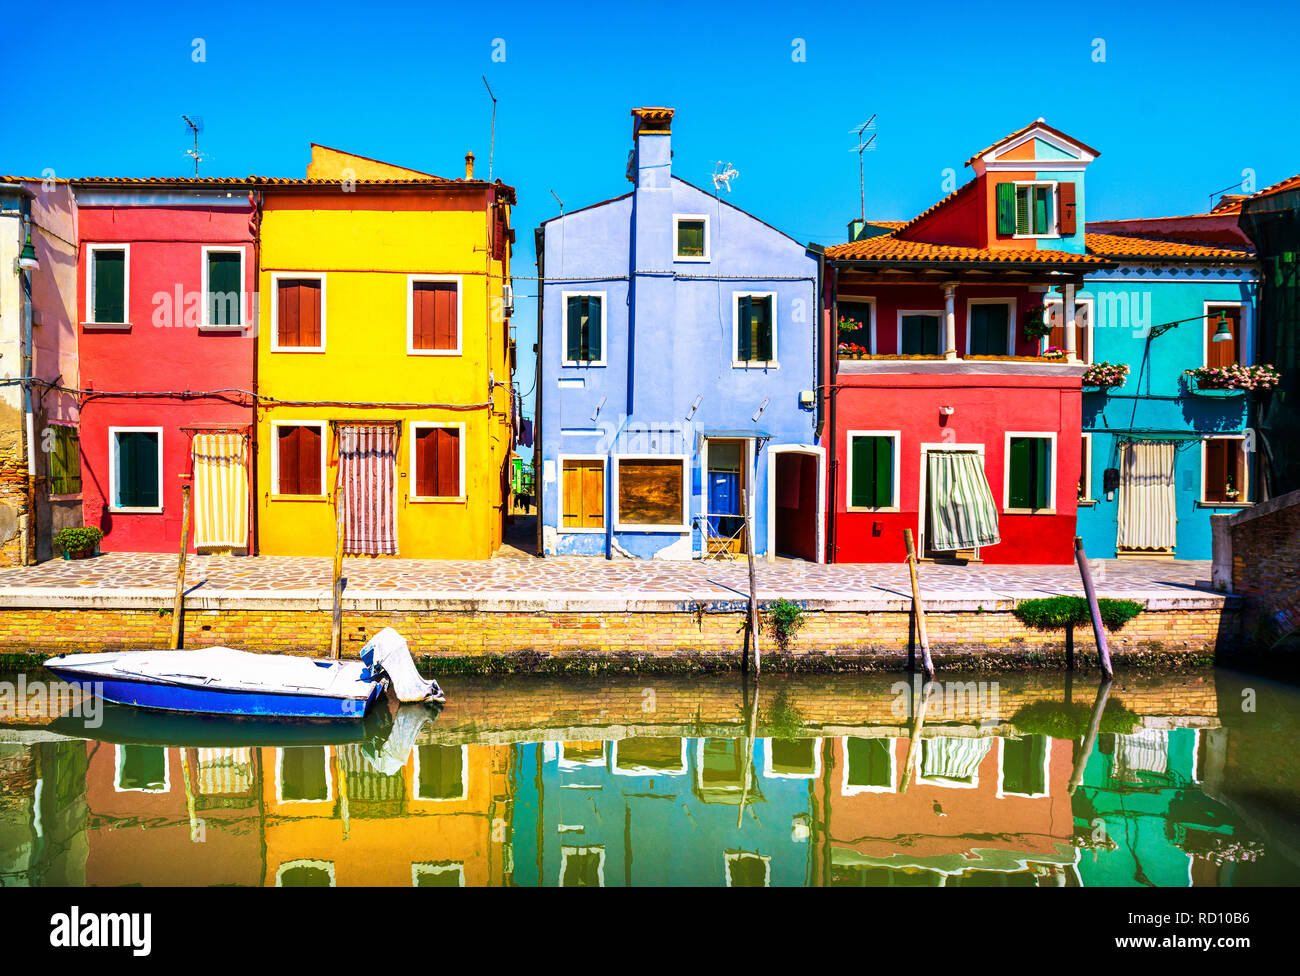 Wahrzeichen von Venedig, Burano Insel Canal, bunte Häuser und Boote, Italien, Europa. Stockfoto